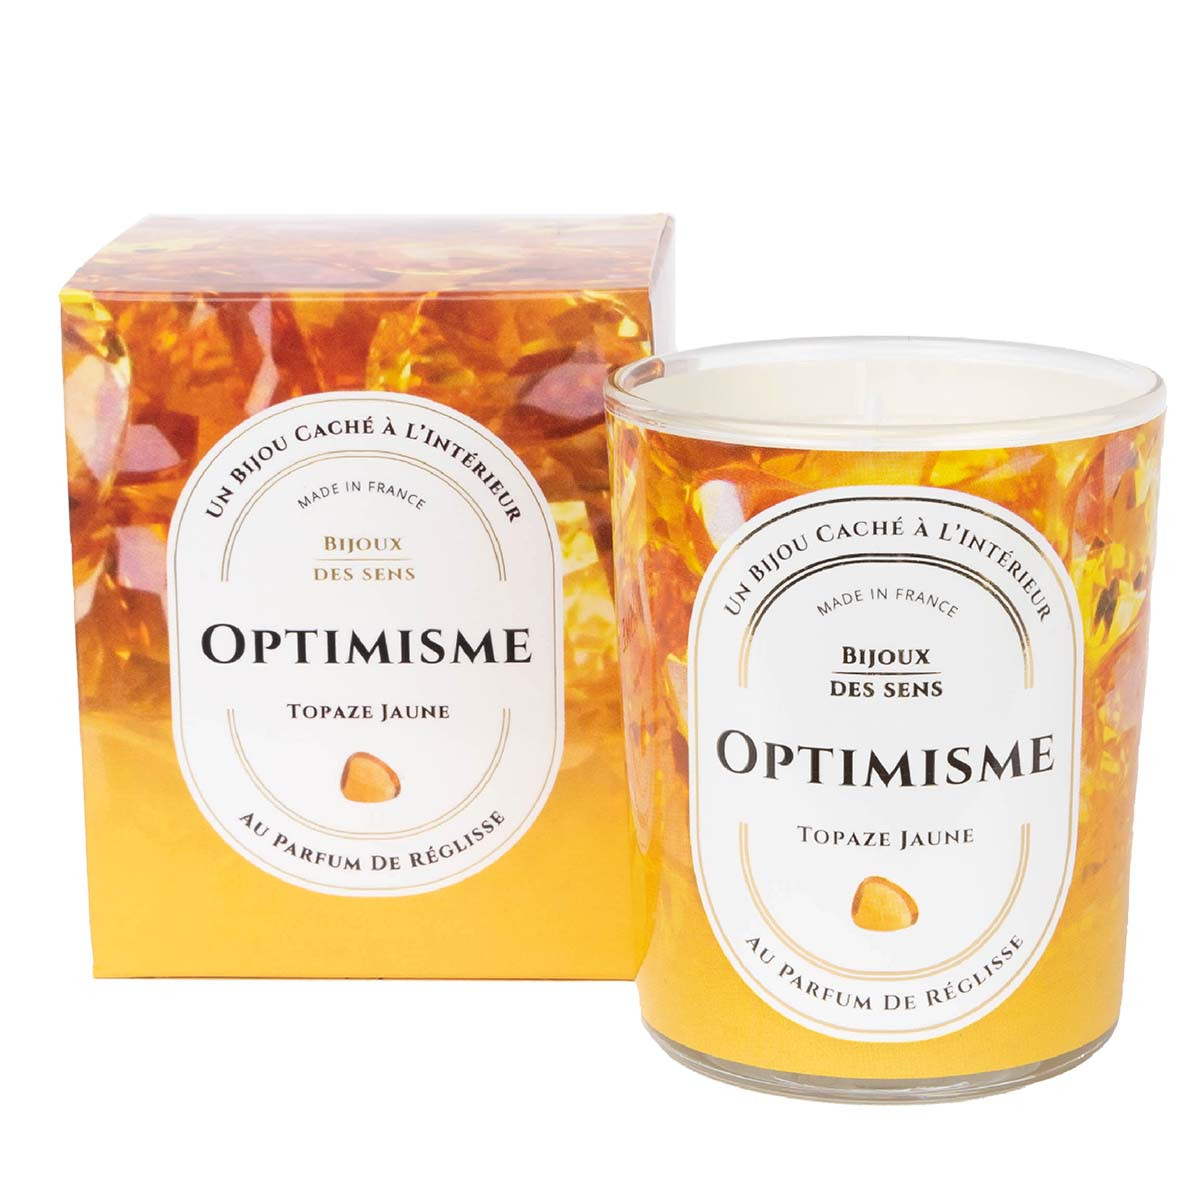 Optimisme - Bougie Fragrance Reglisse et Collier Argenté Topaze Jaune